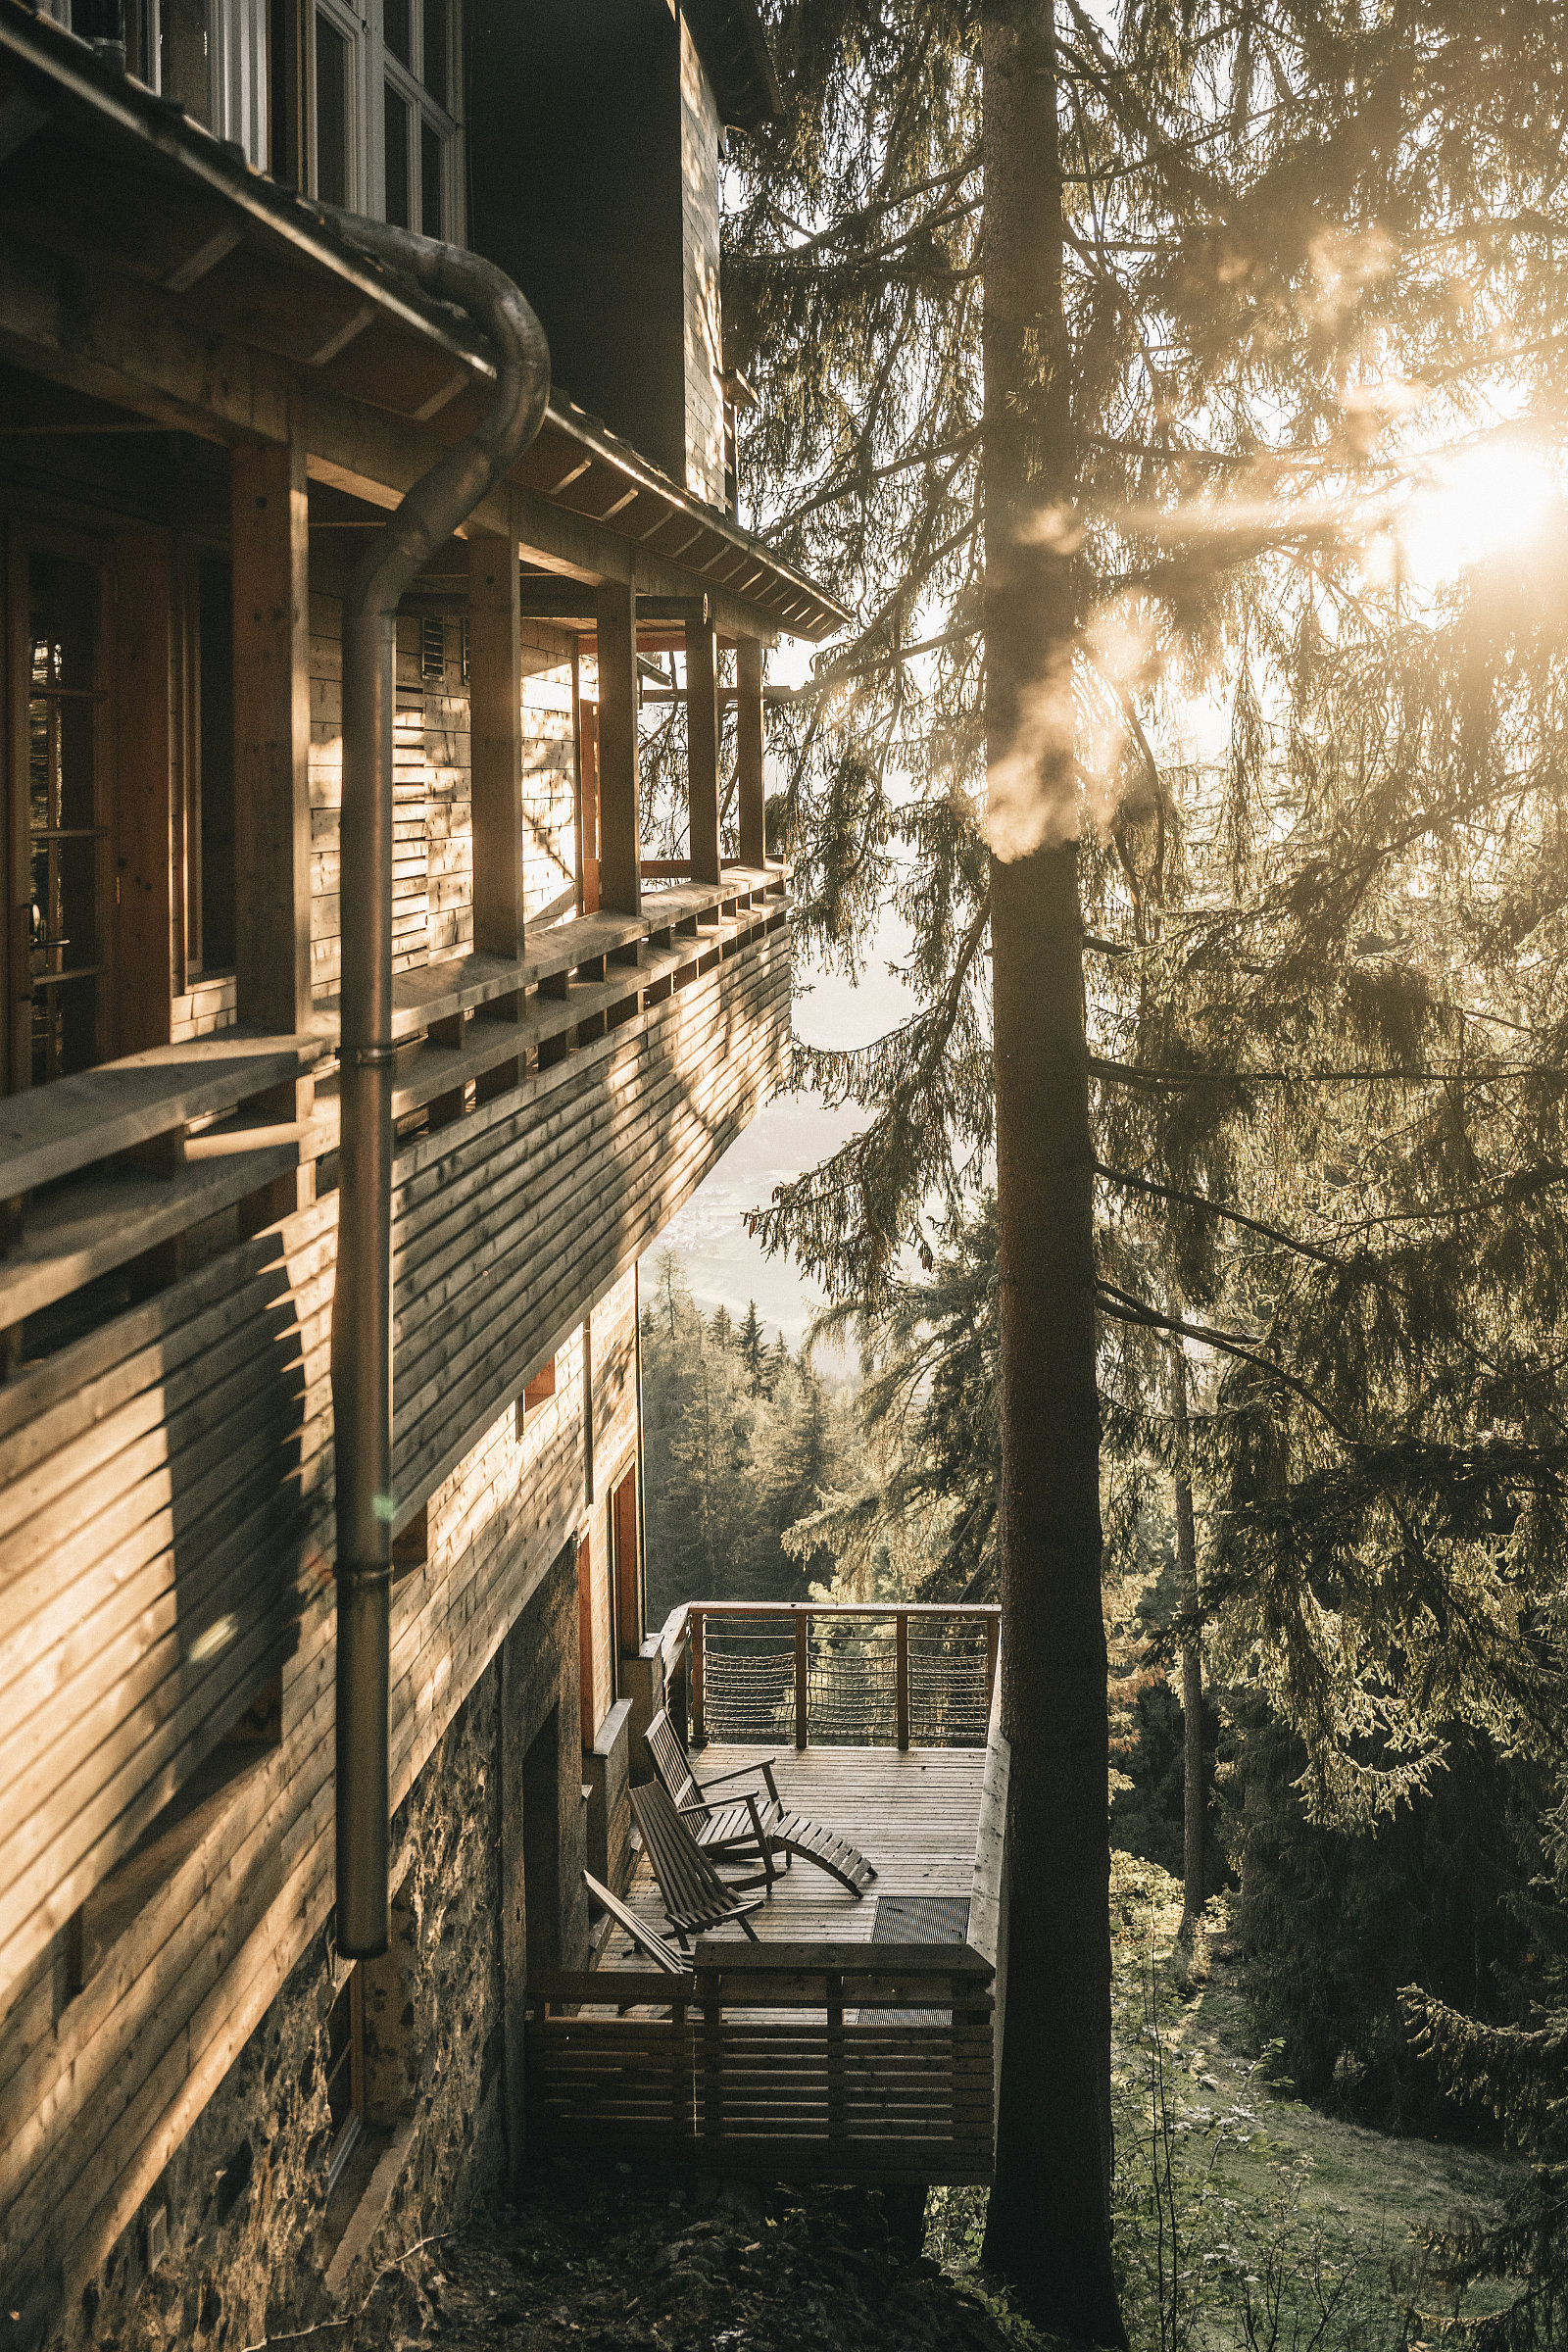 Außenansicht eins Hotel, das vollständig mit Holz umkleidet ist. Ein kleiner Balkon ist zum angrenzenden Wald ausgerichtet.